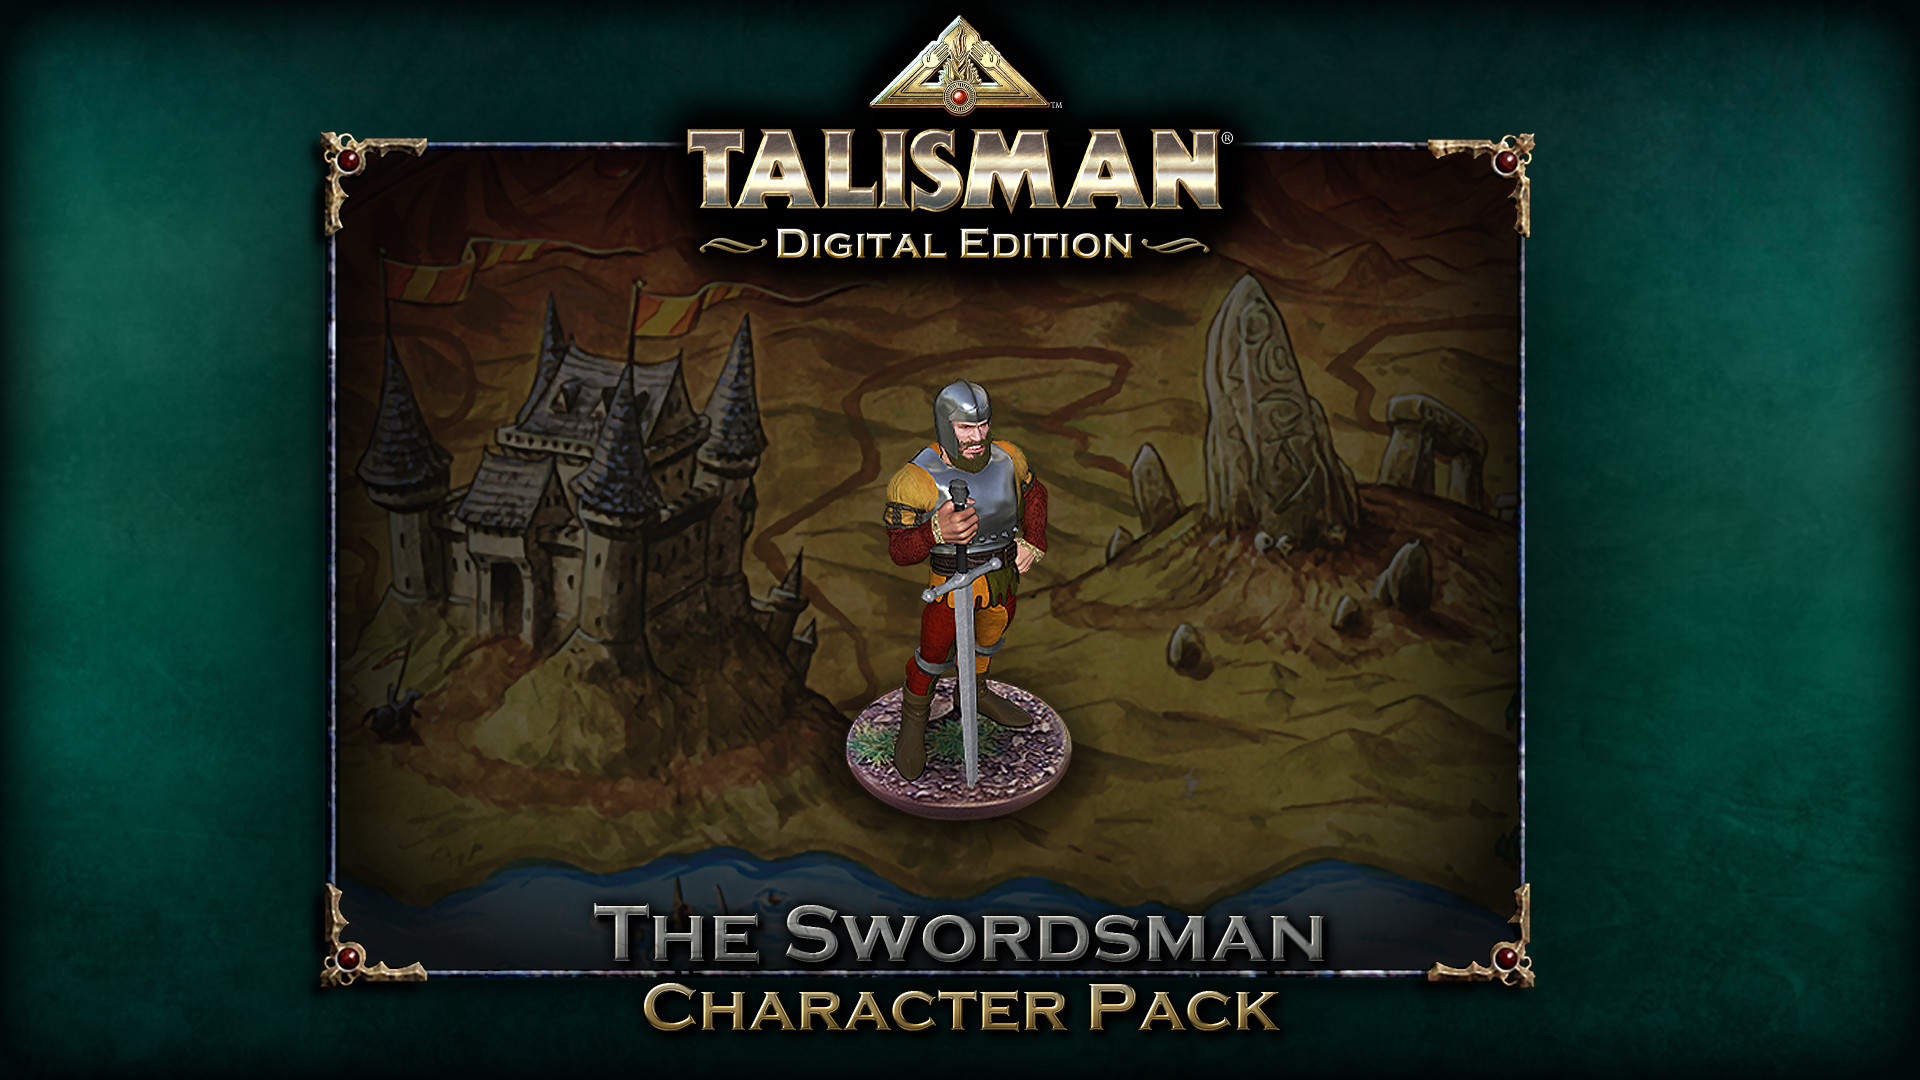 Talisman - Character Pack #19 Swordsman DLC Steam CD Key 0.97 USD